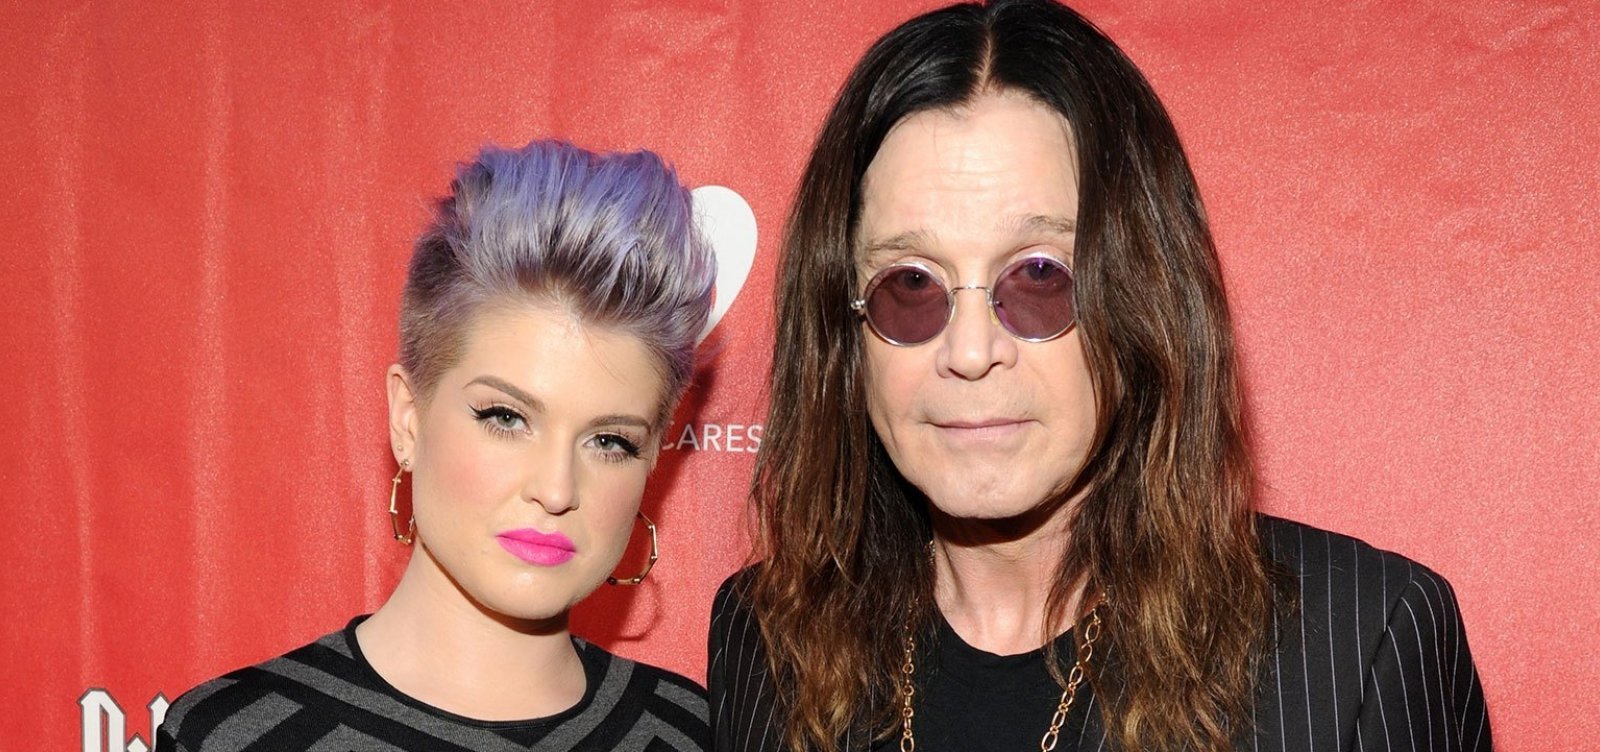 Filha nega que Ozzy Osbourne esteja em leito de morte: 'Bobagem'